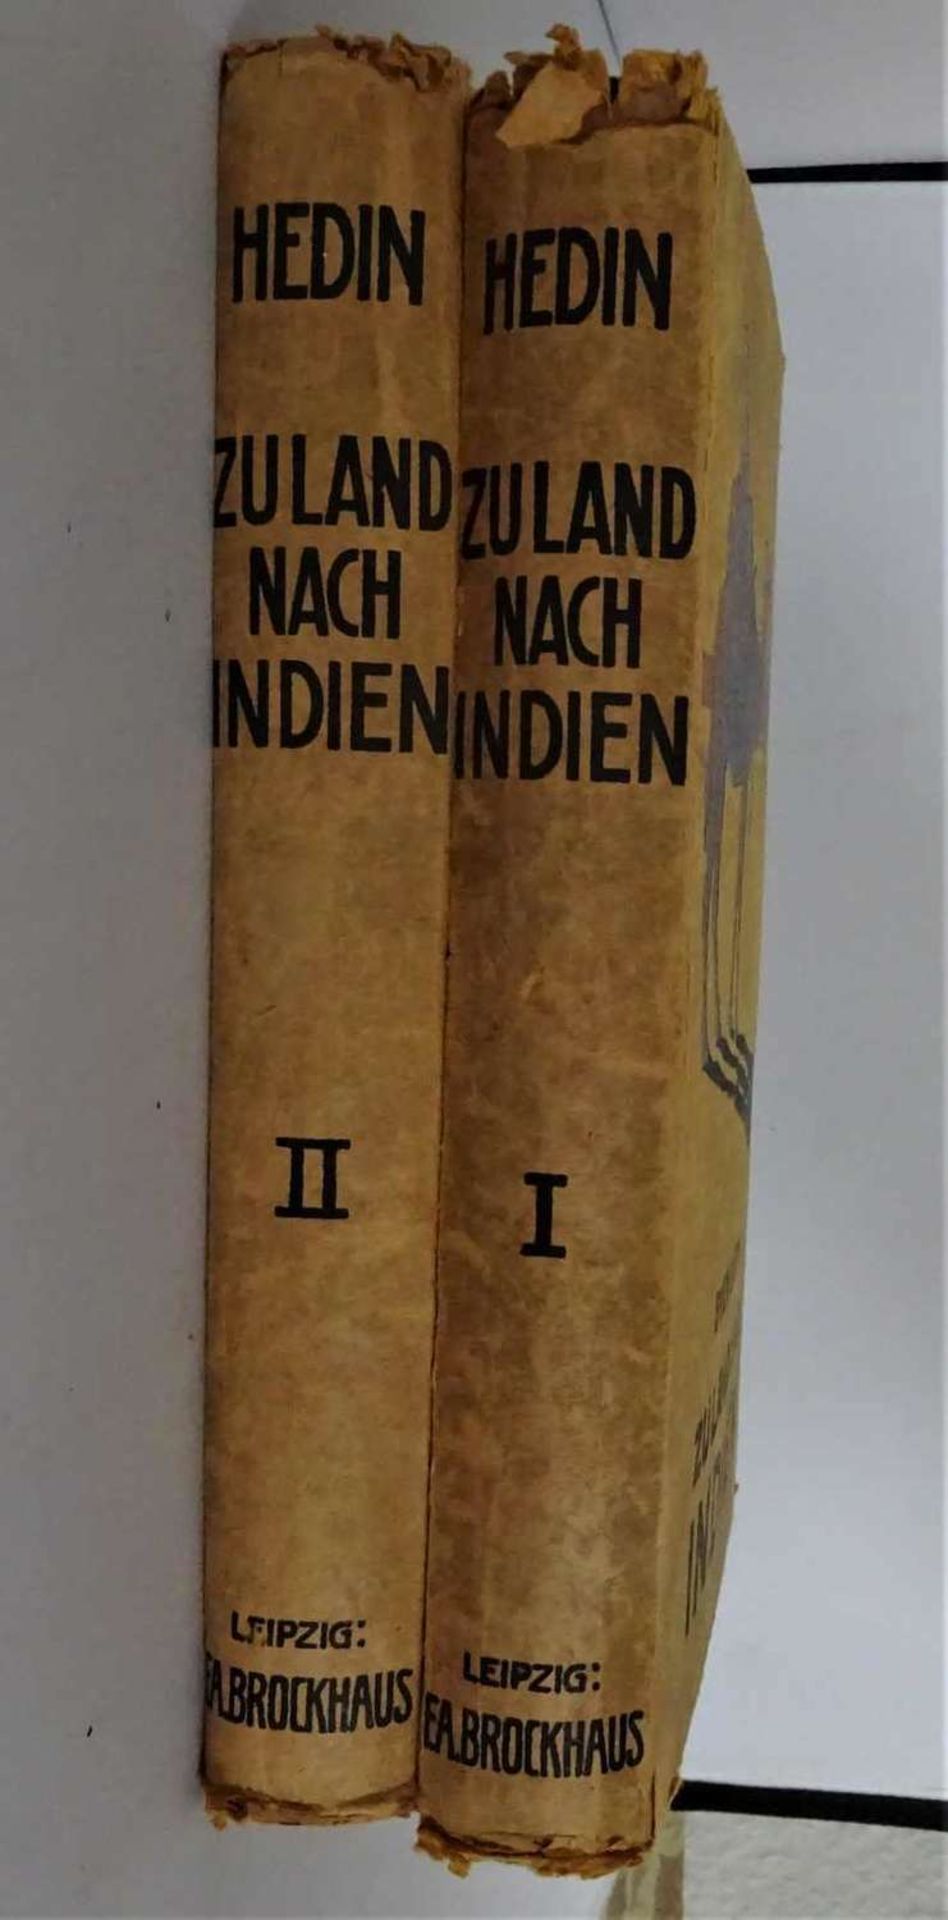 Zu Land nach Indien durch Persien, Seistan, Belutschistan von Sven Hedin, Band 1-2. Leipzig 1922